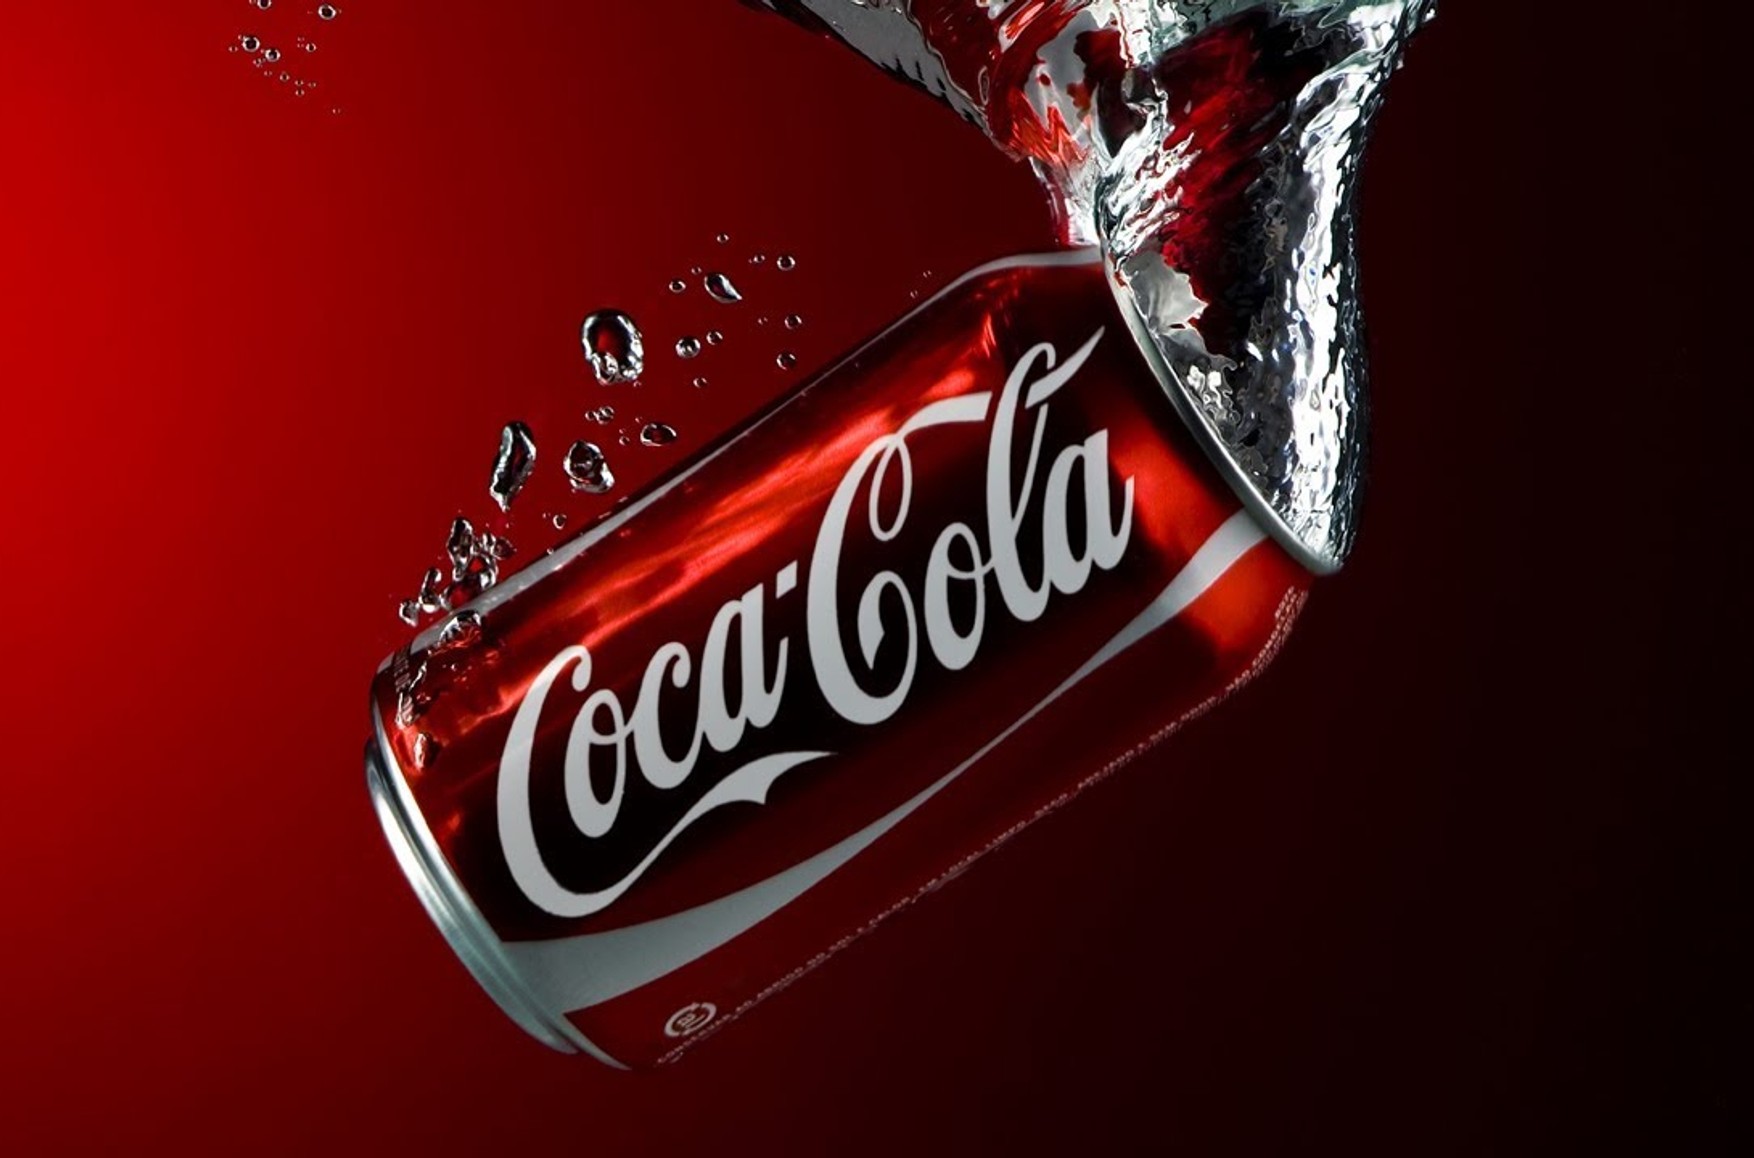 Coca-Cola уходит из России. Дистрибутор компании объявил о прекращении выпуска и продажи напитков